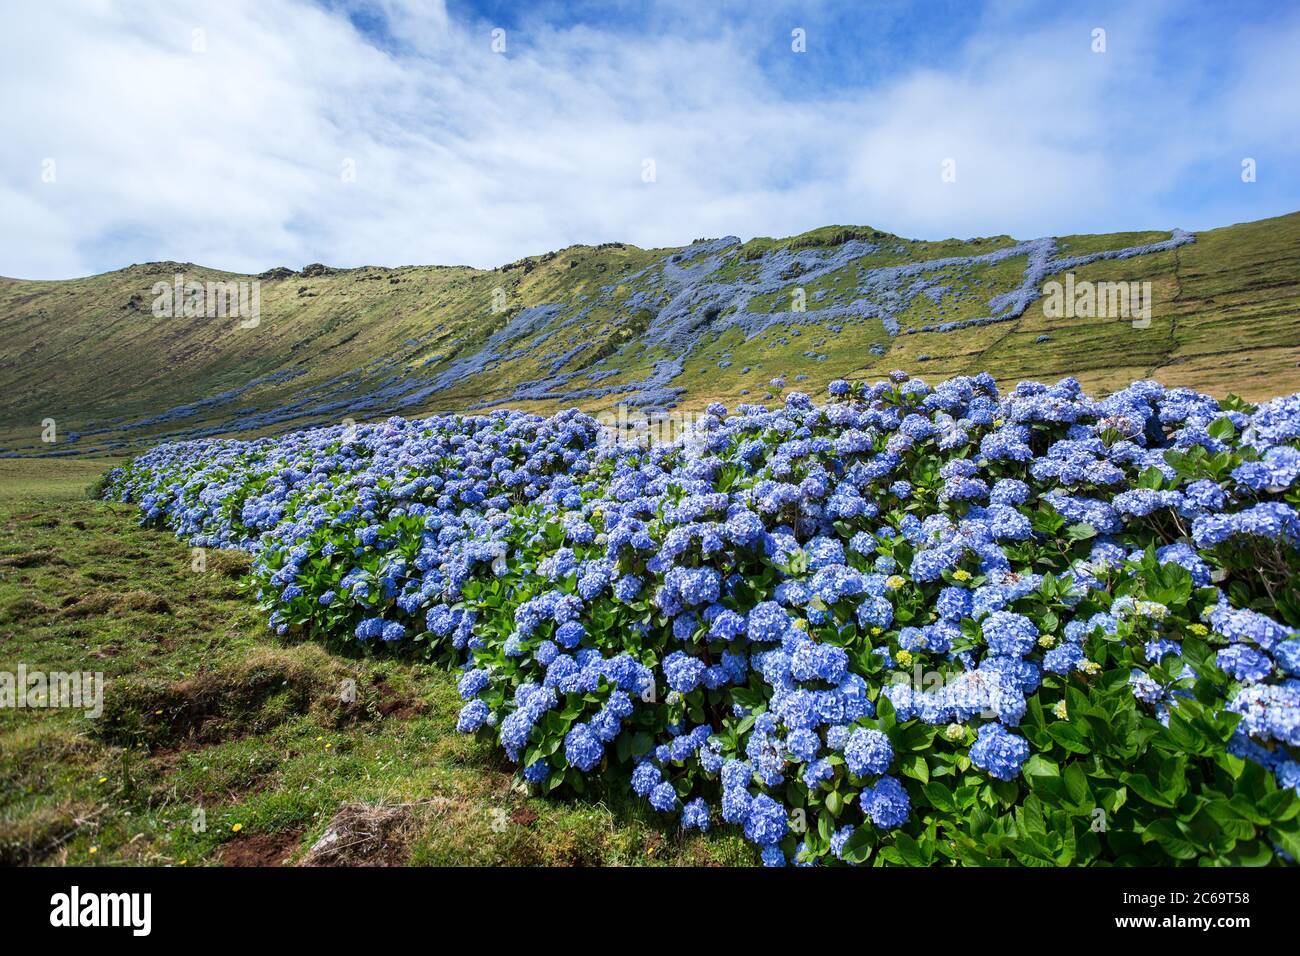 L'idrangea selvaggia si è diffusa sulle colline dell'isola delle Azzorre, in Portogallo Foto Stock